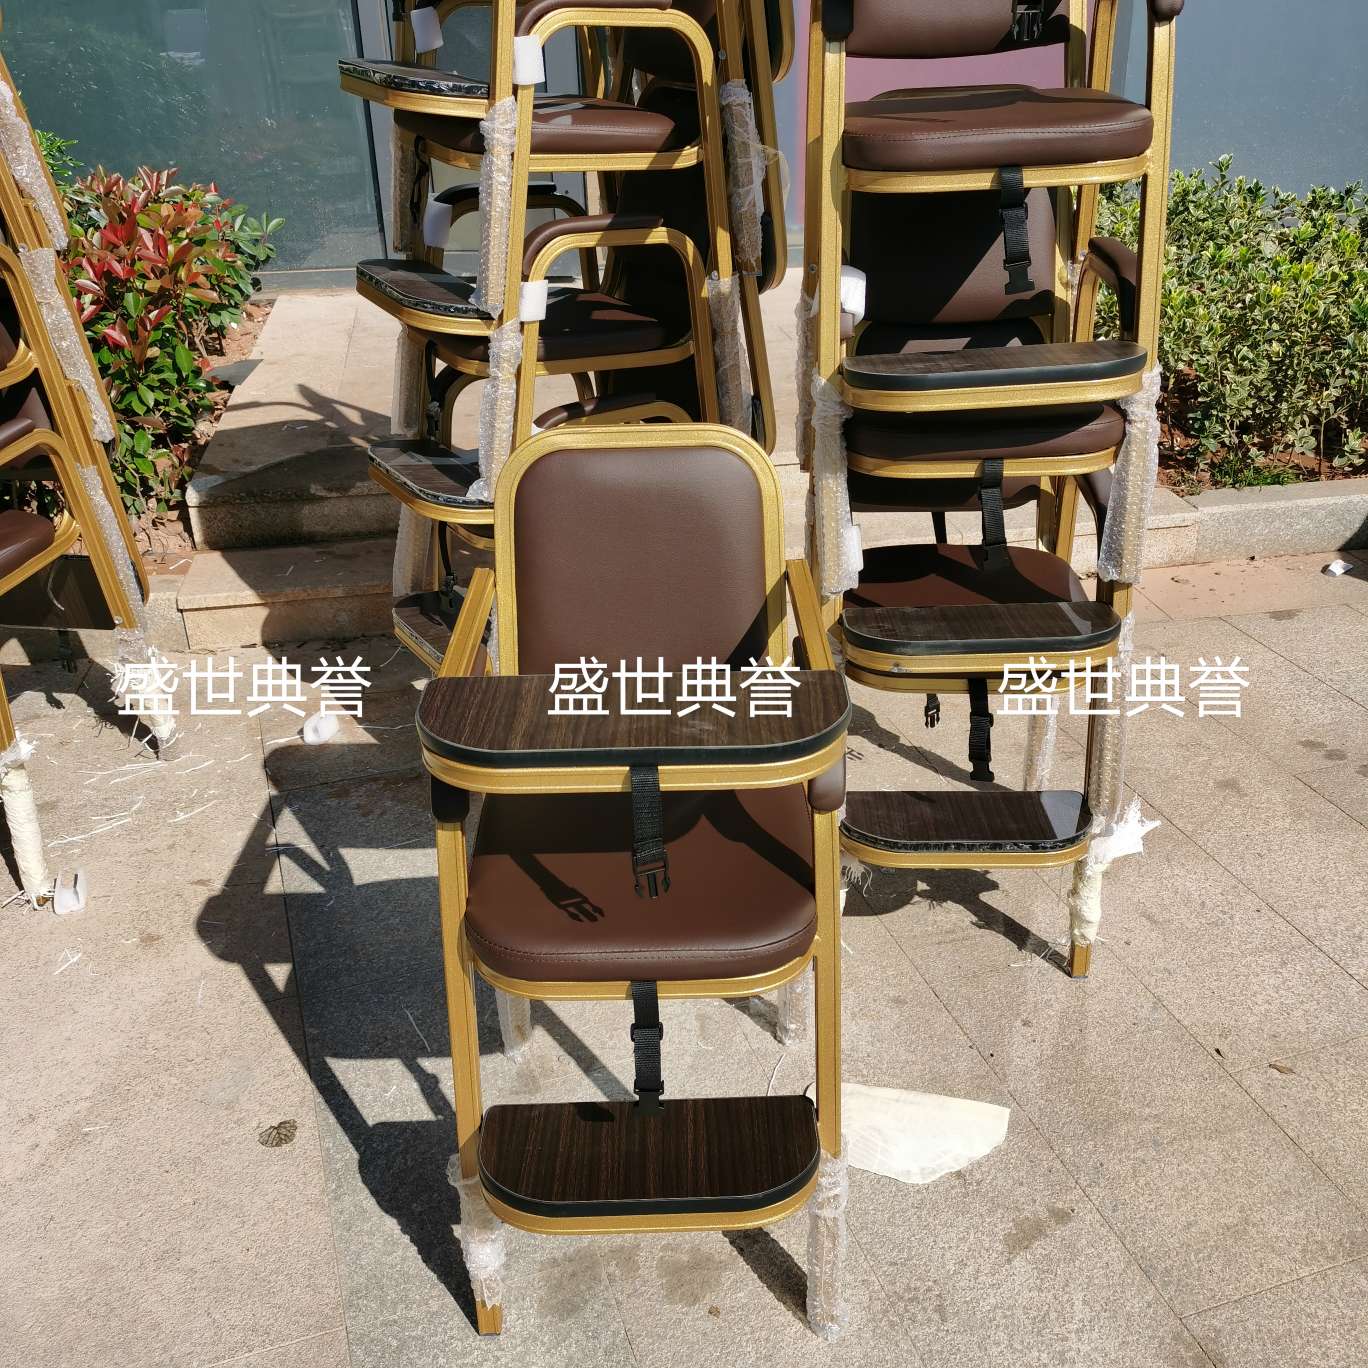 杭州国际宴会中心宝宝餐椅酒店宴会厅铝合金宝宝椅餐厅包厢儿童椅